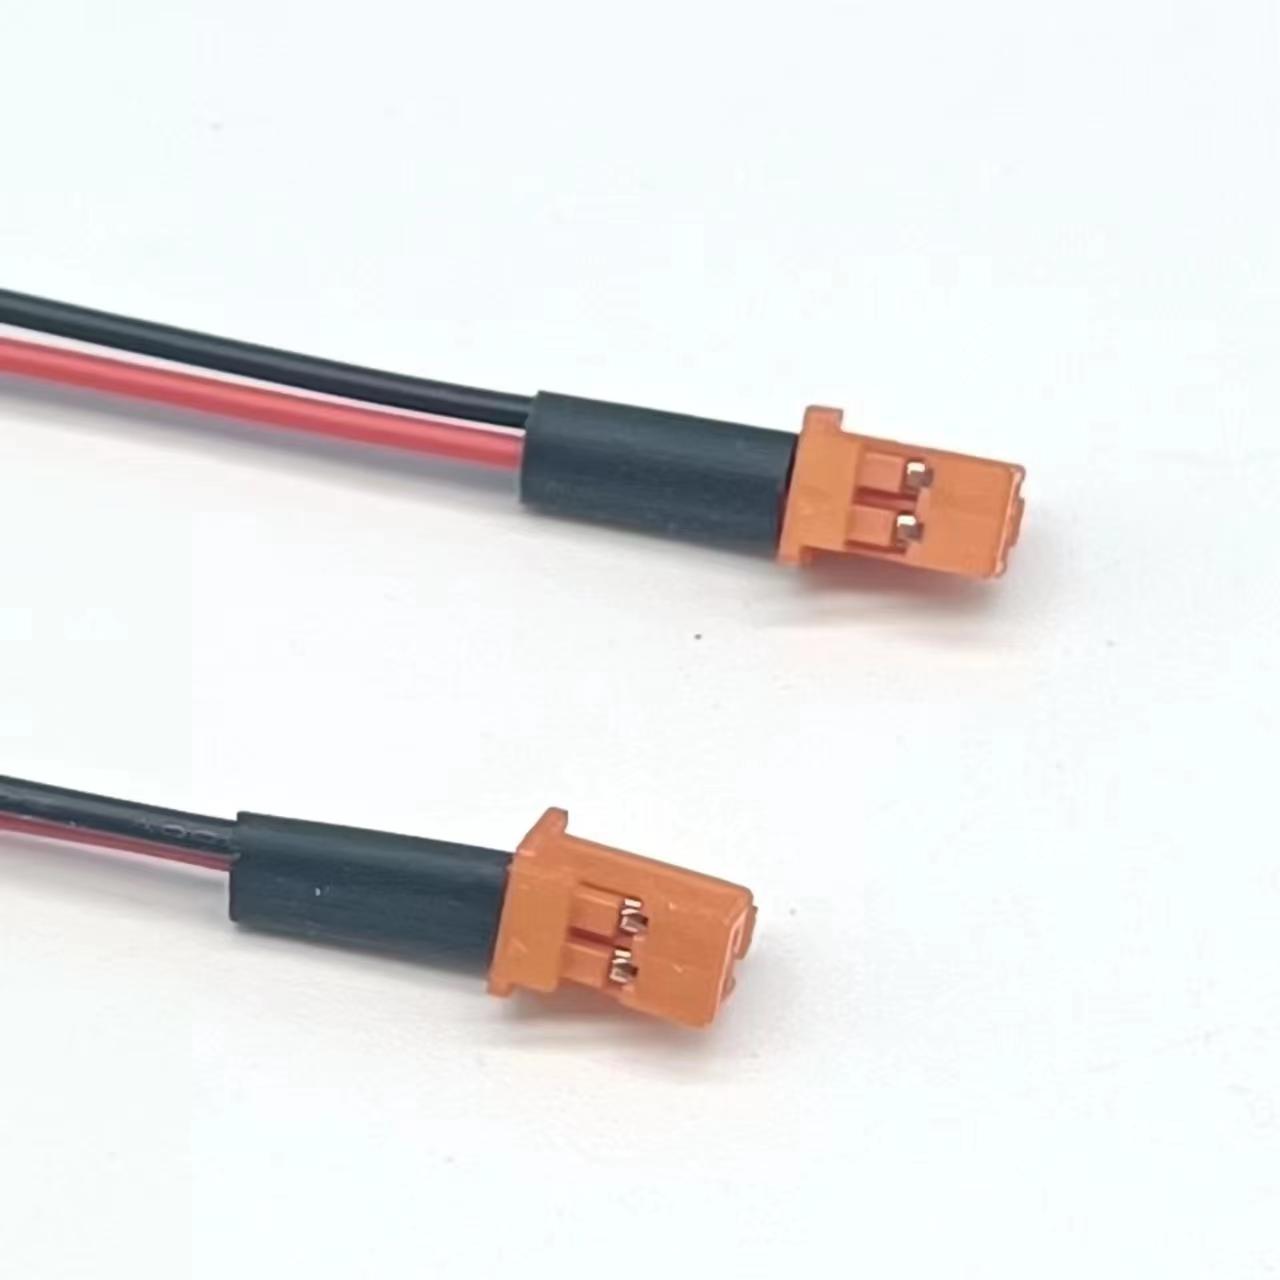 端子线束厂家直供PA端子连接线束 电池扣连接线束 纯铜材质